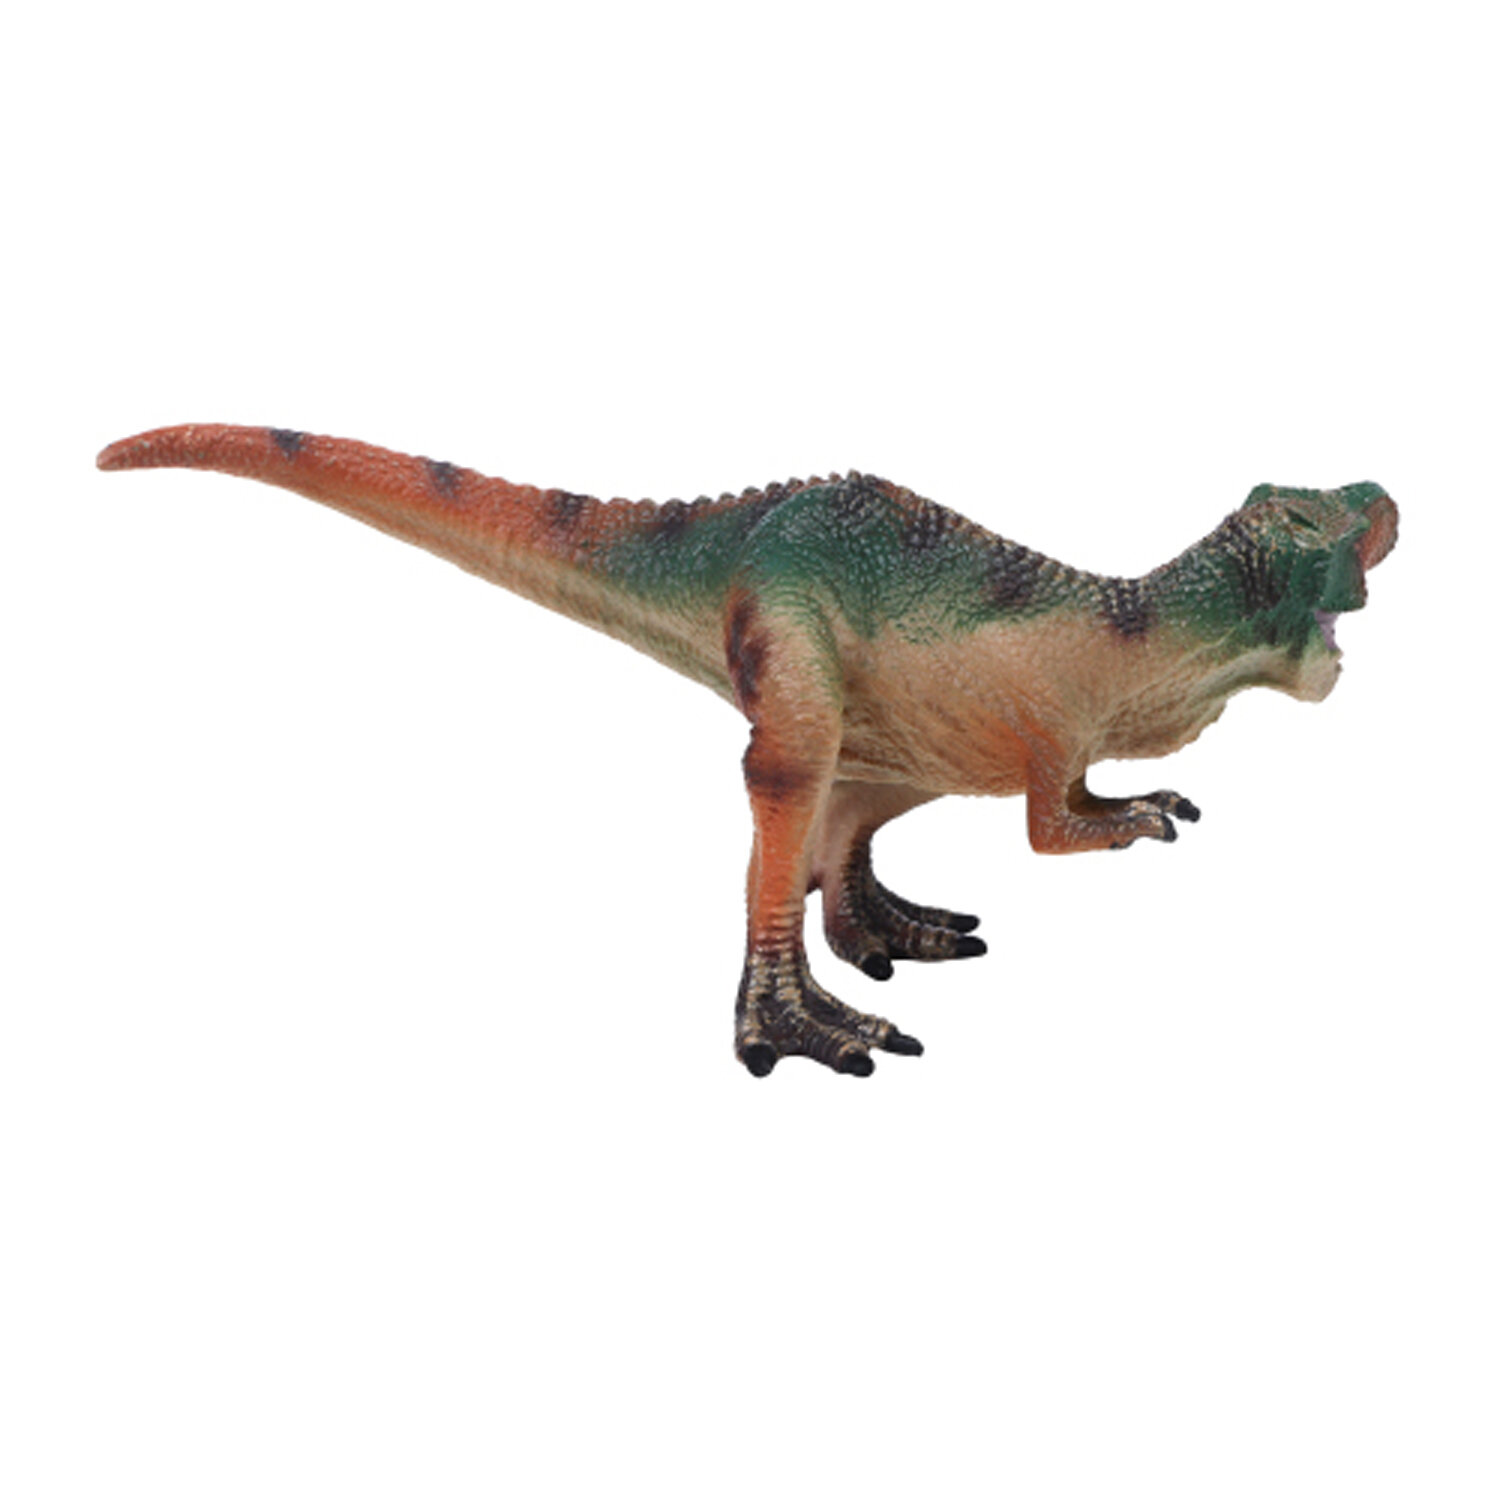 Игрушка динозавр серии "Мир динозавров" - Фигурка Акрокантозавр